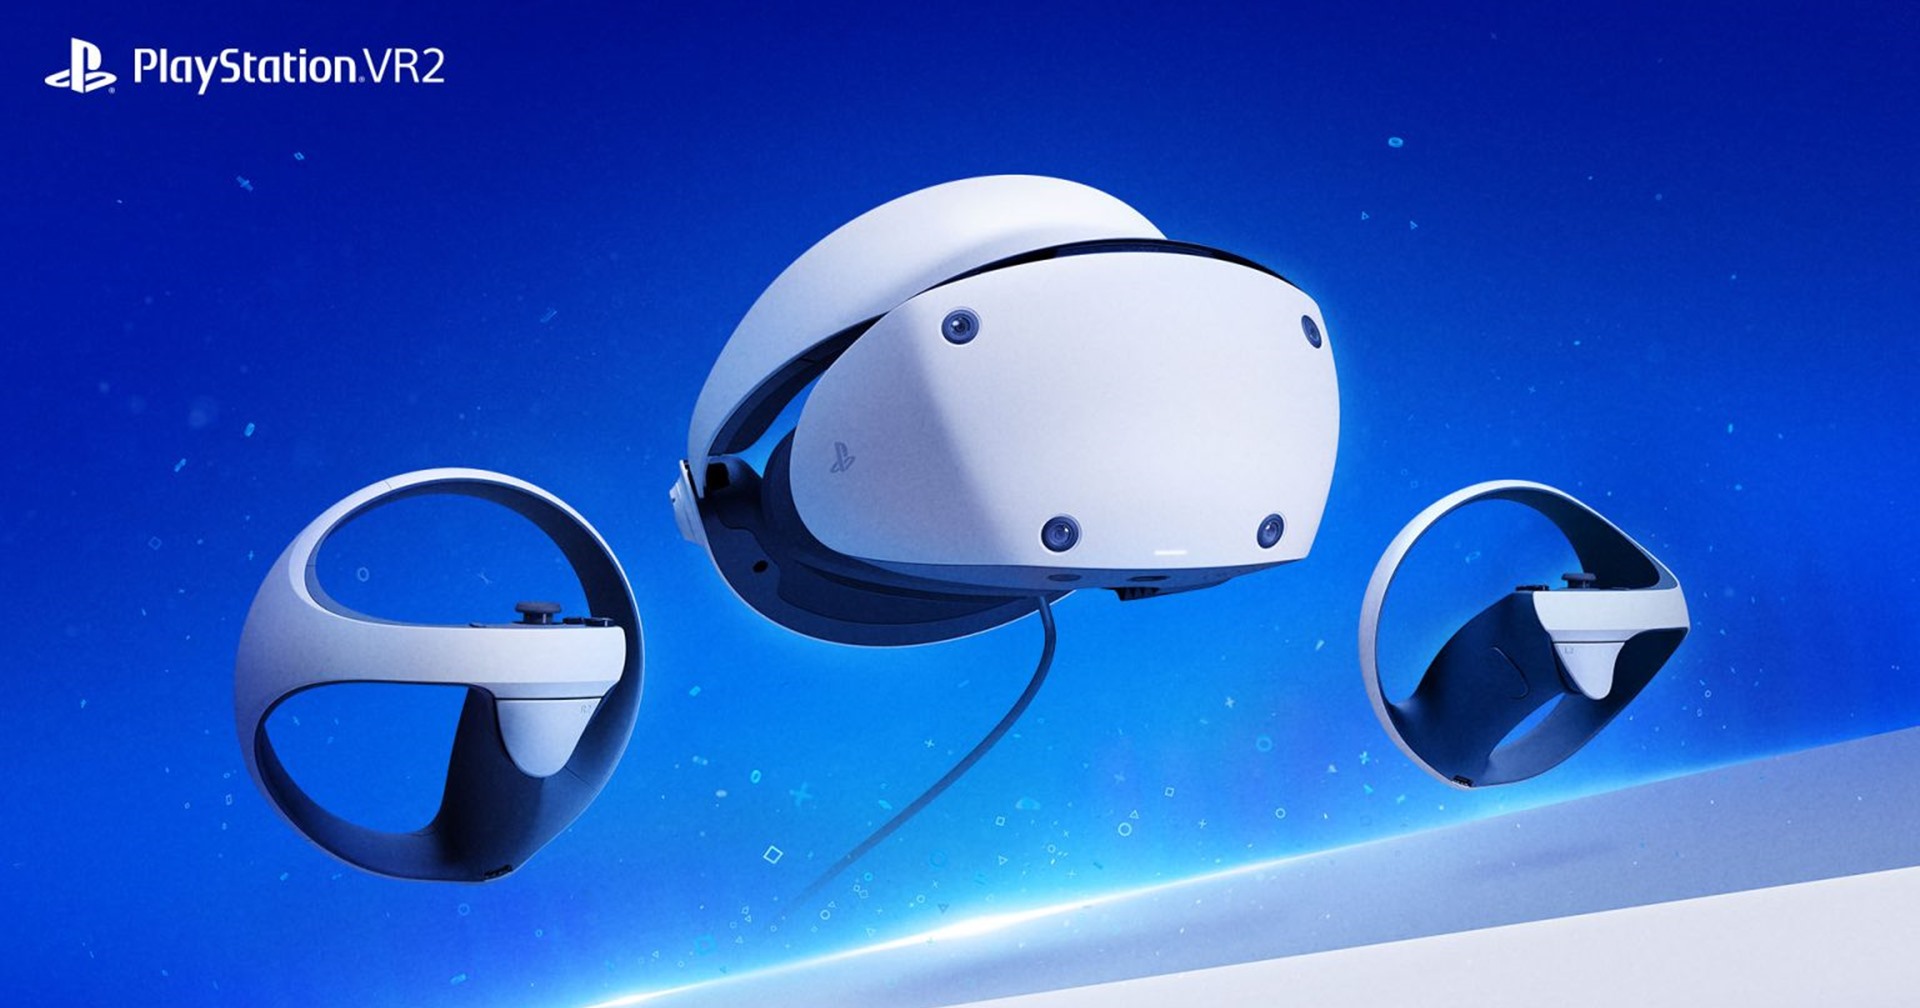 ข่าวลือ Sony ปรับลดการผลิต PS VR2 ลง 20% เพราะยอดขายไม่เข้าเป้า